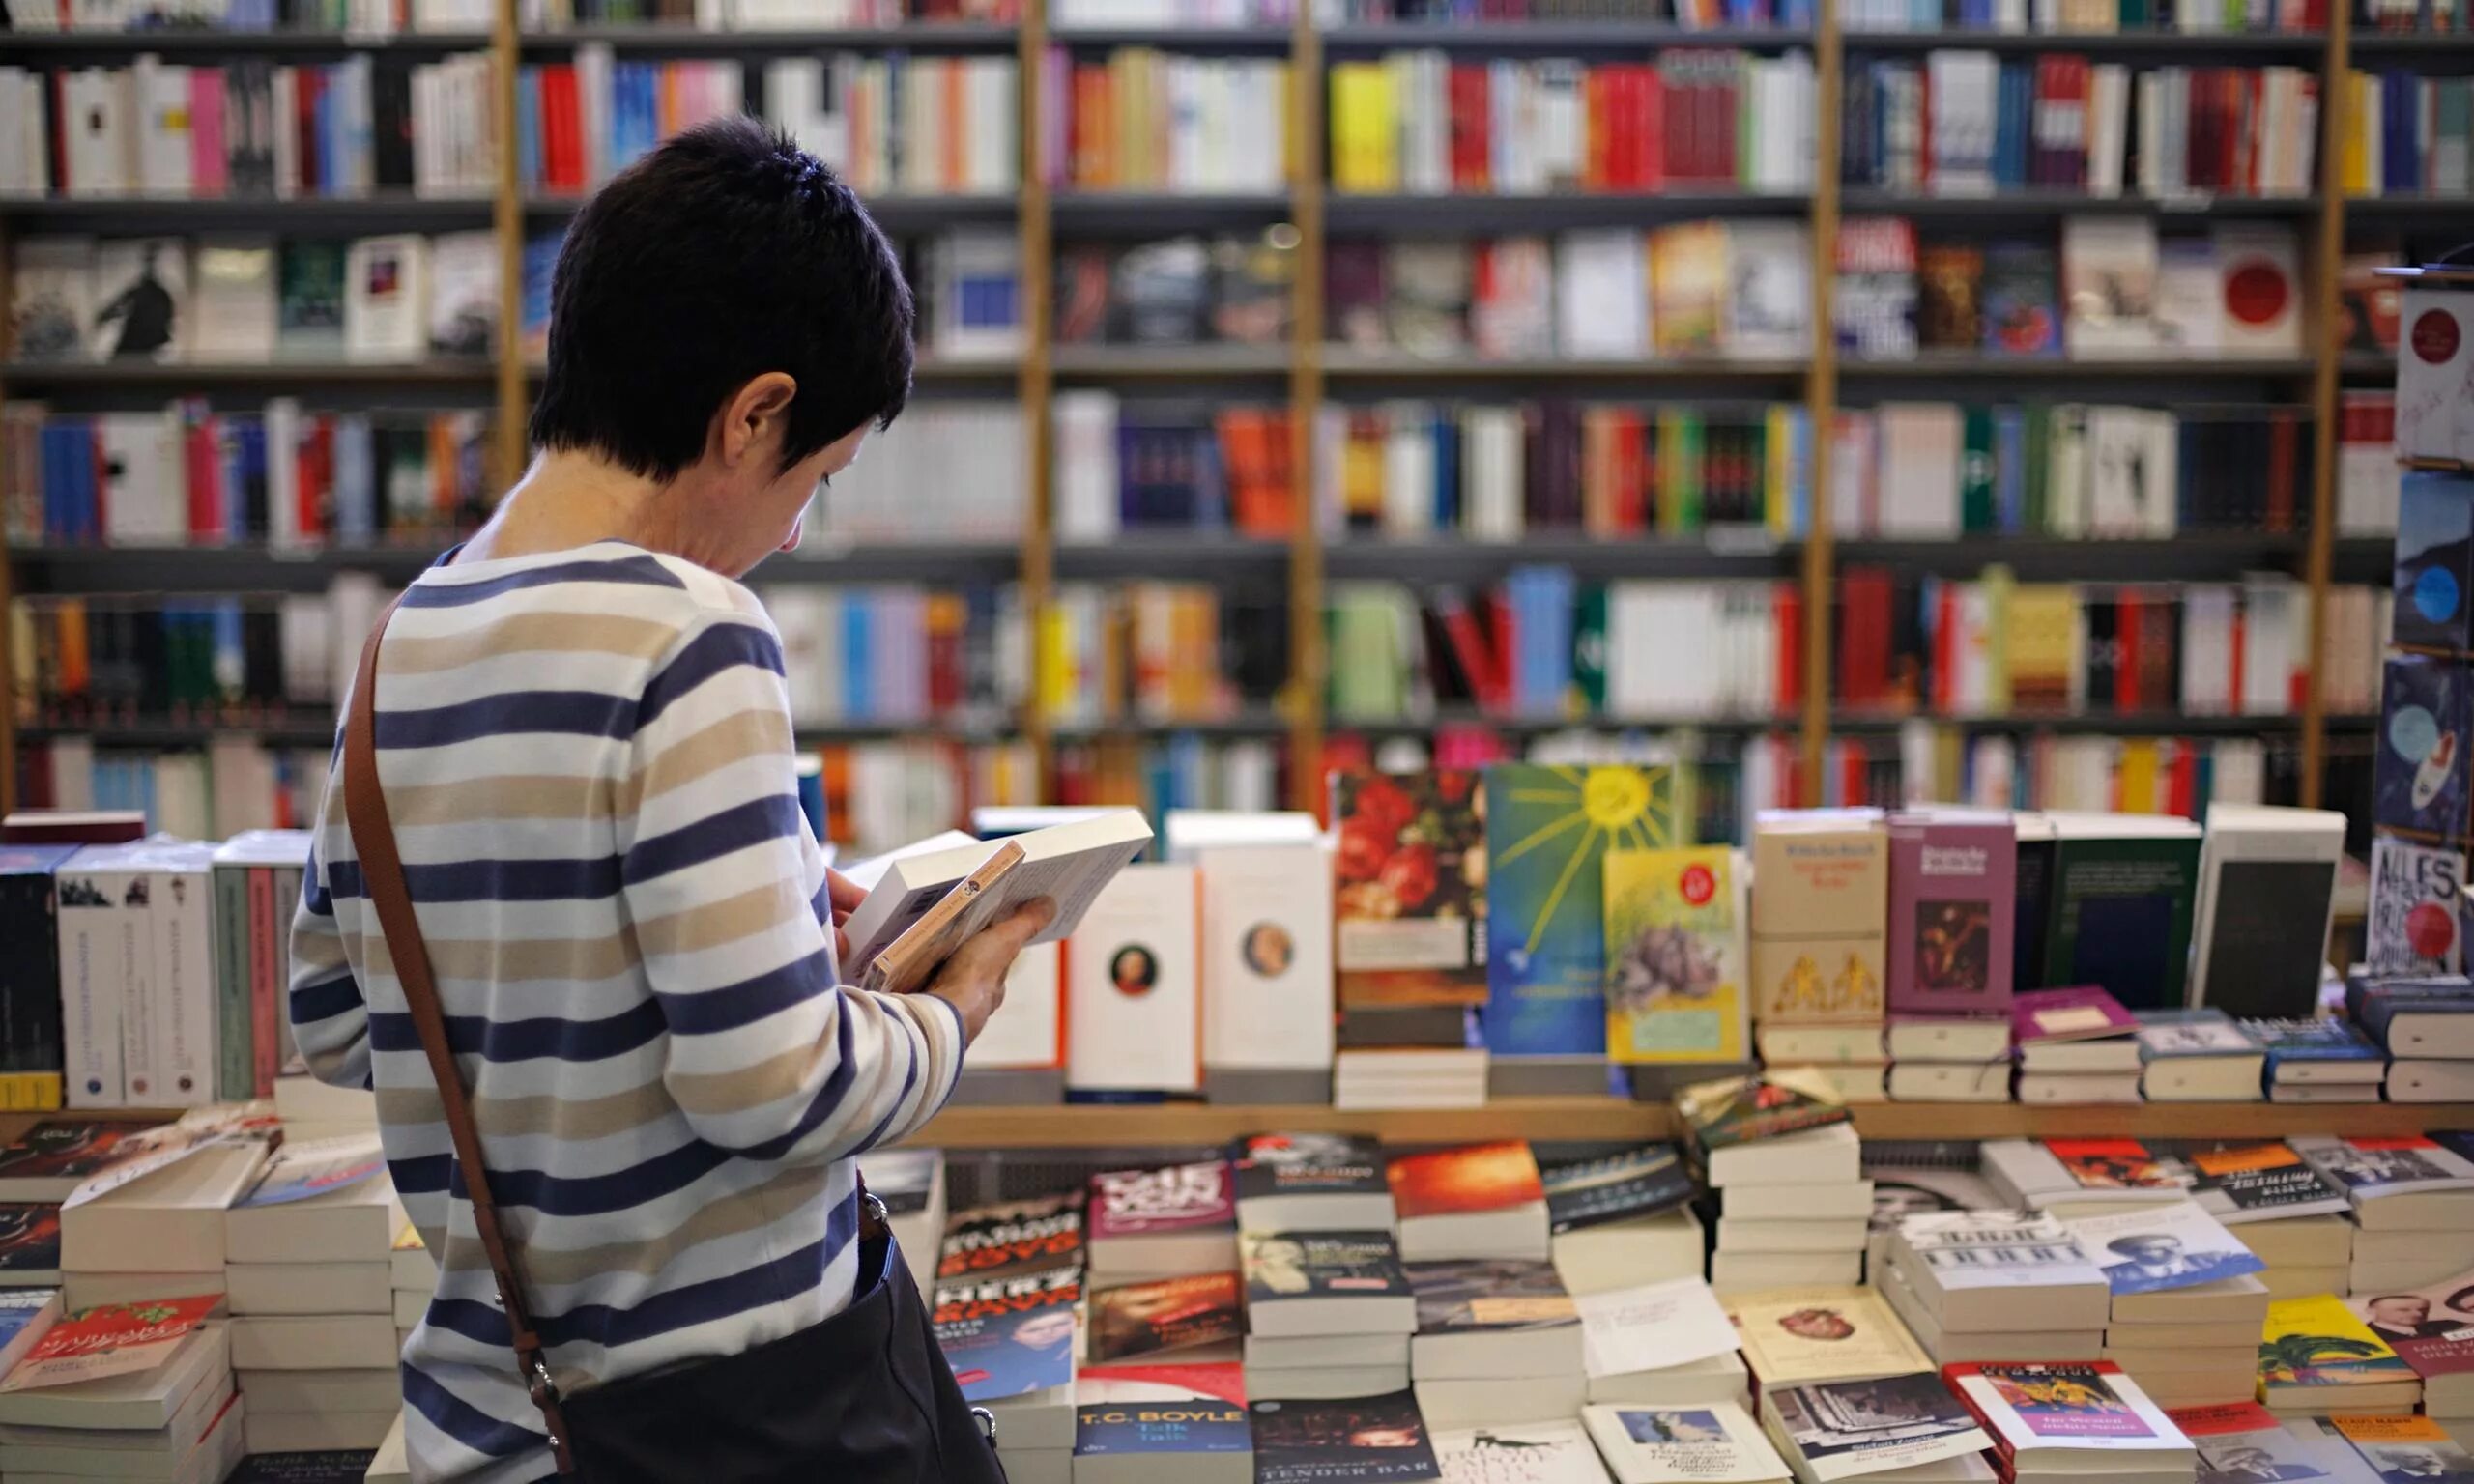 Сайт покупки книг. Люди в книжном магазине. Покупатели в книжном магазине. Книжный прилавок. Чтение книг в книжном магазине.